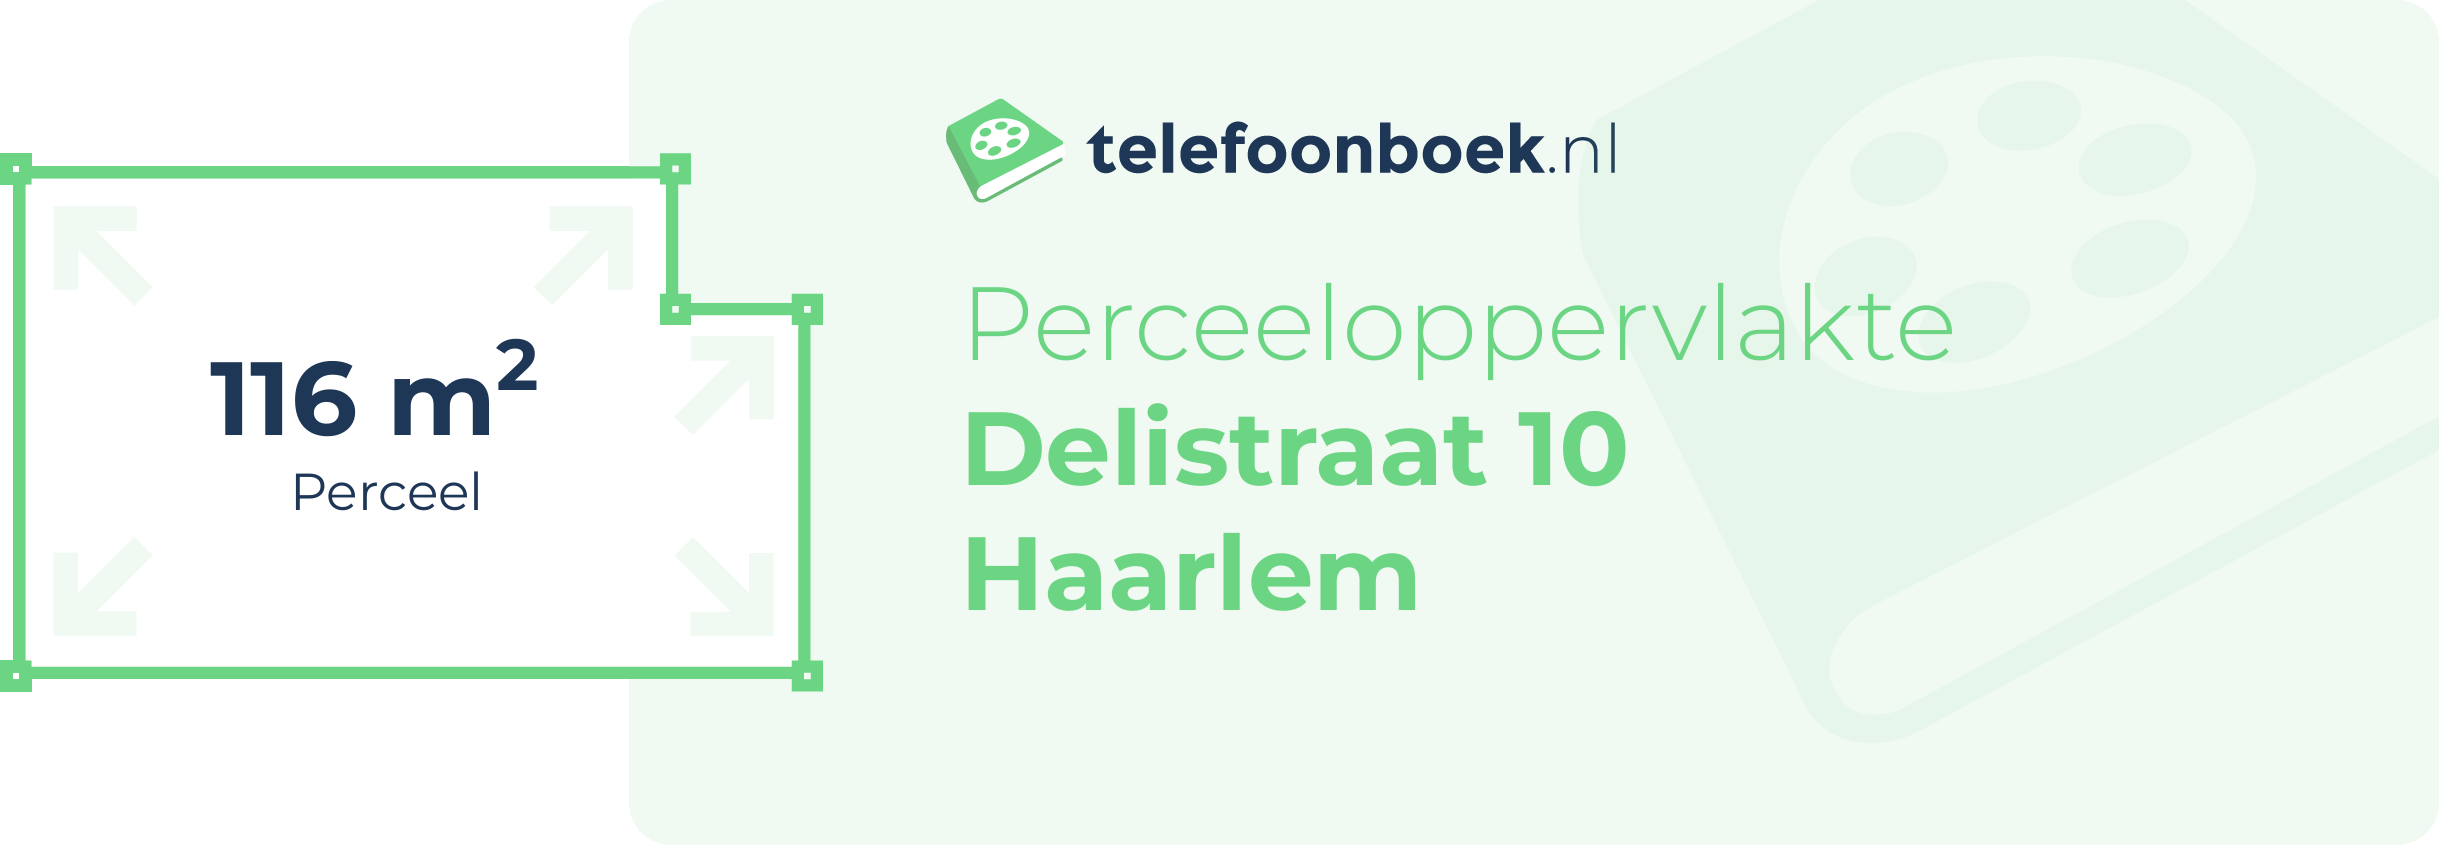 Perceeloppervlakte Delistraat 10 Haarlem